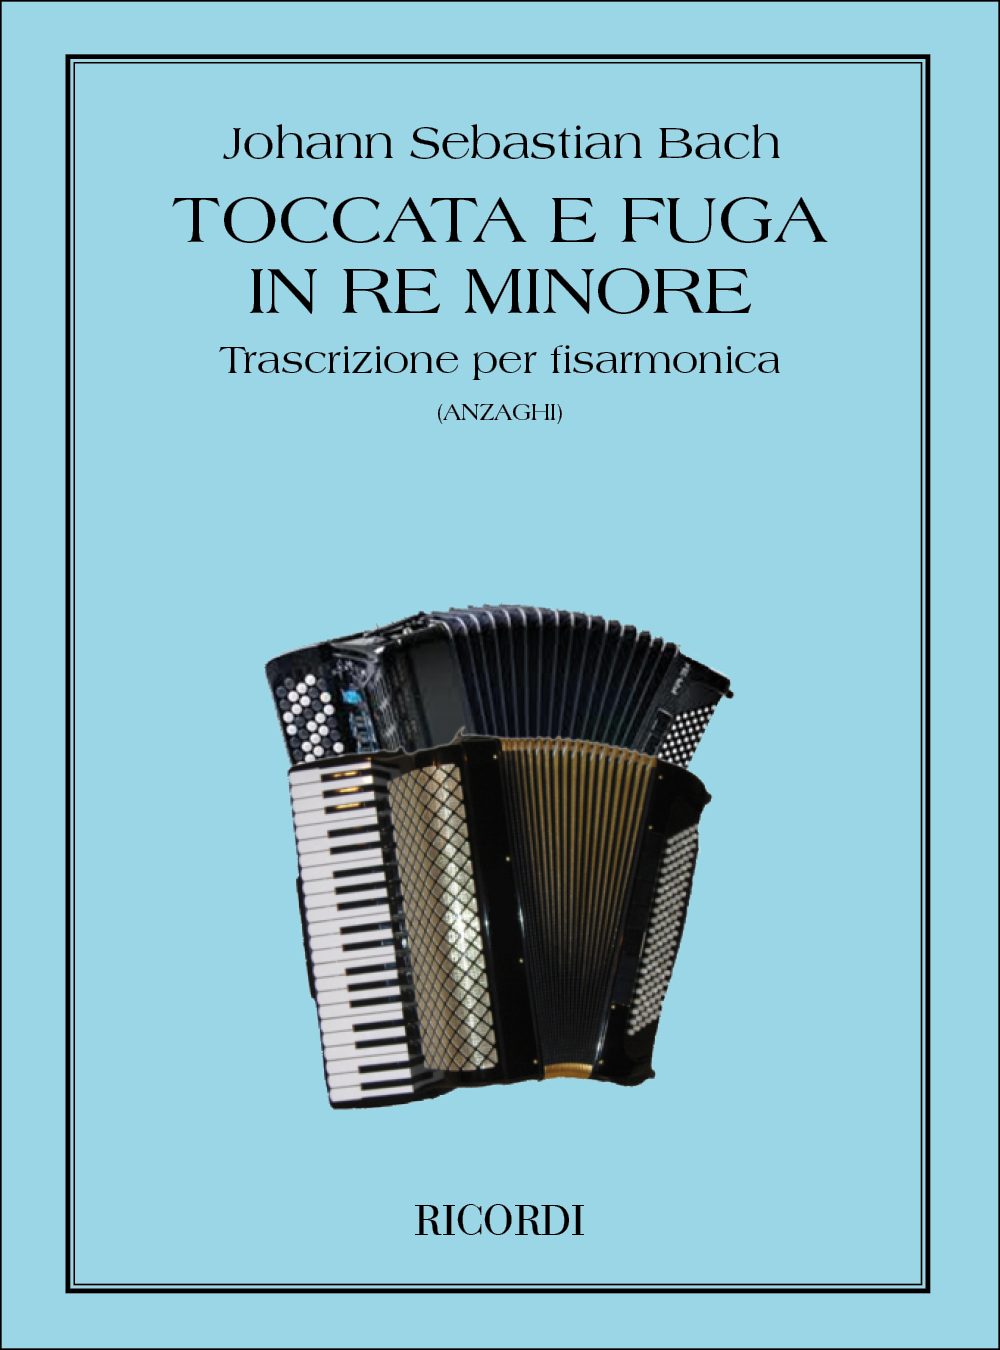 Johann Sebastian Bach: Toccata e Fuga in re minore BWV 565: Accordion